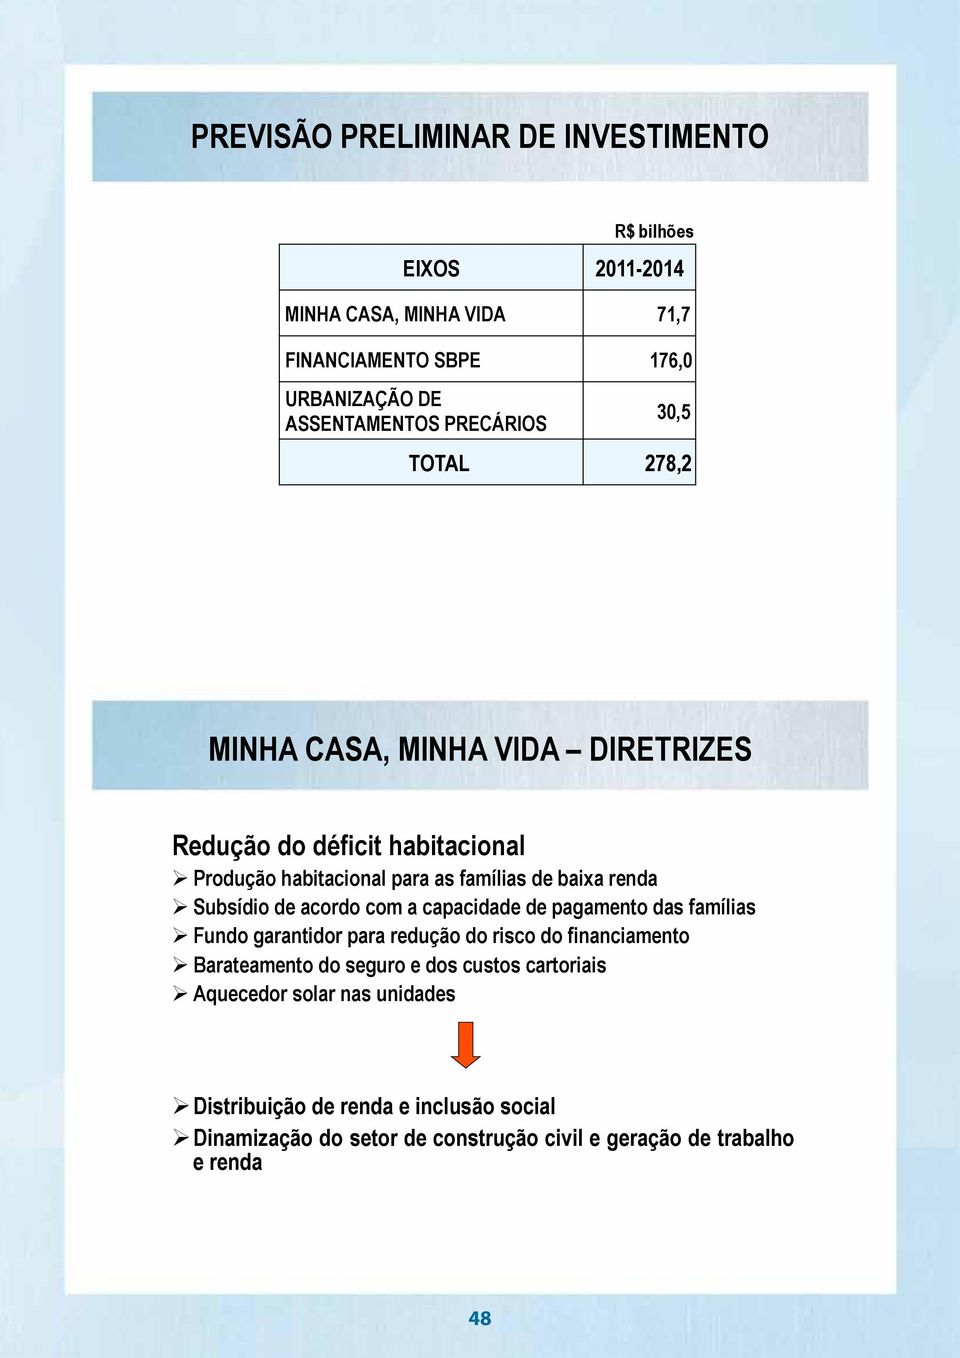 Subsídio de acordo com a capacidade de pagamento das famílias Fundo garantidor para redução do risco do financiamento Barateamento do seguro e dos